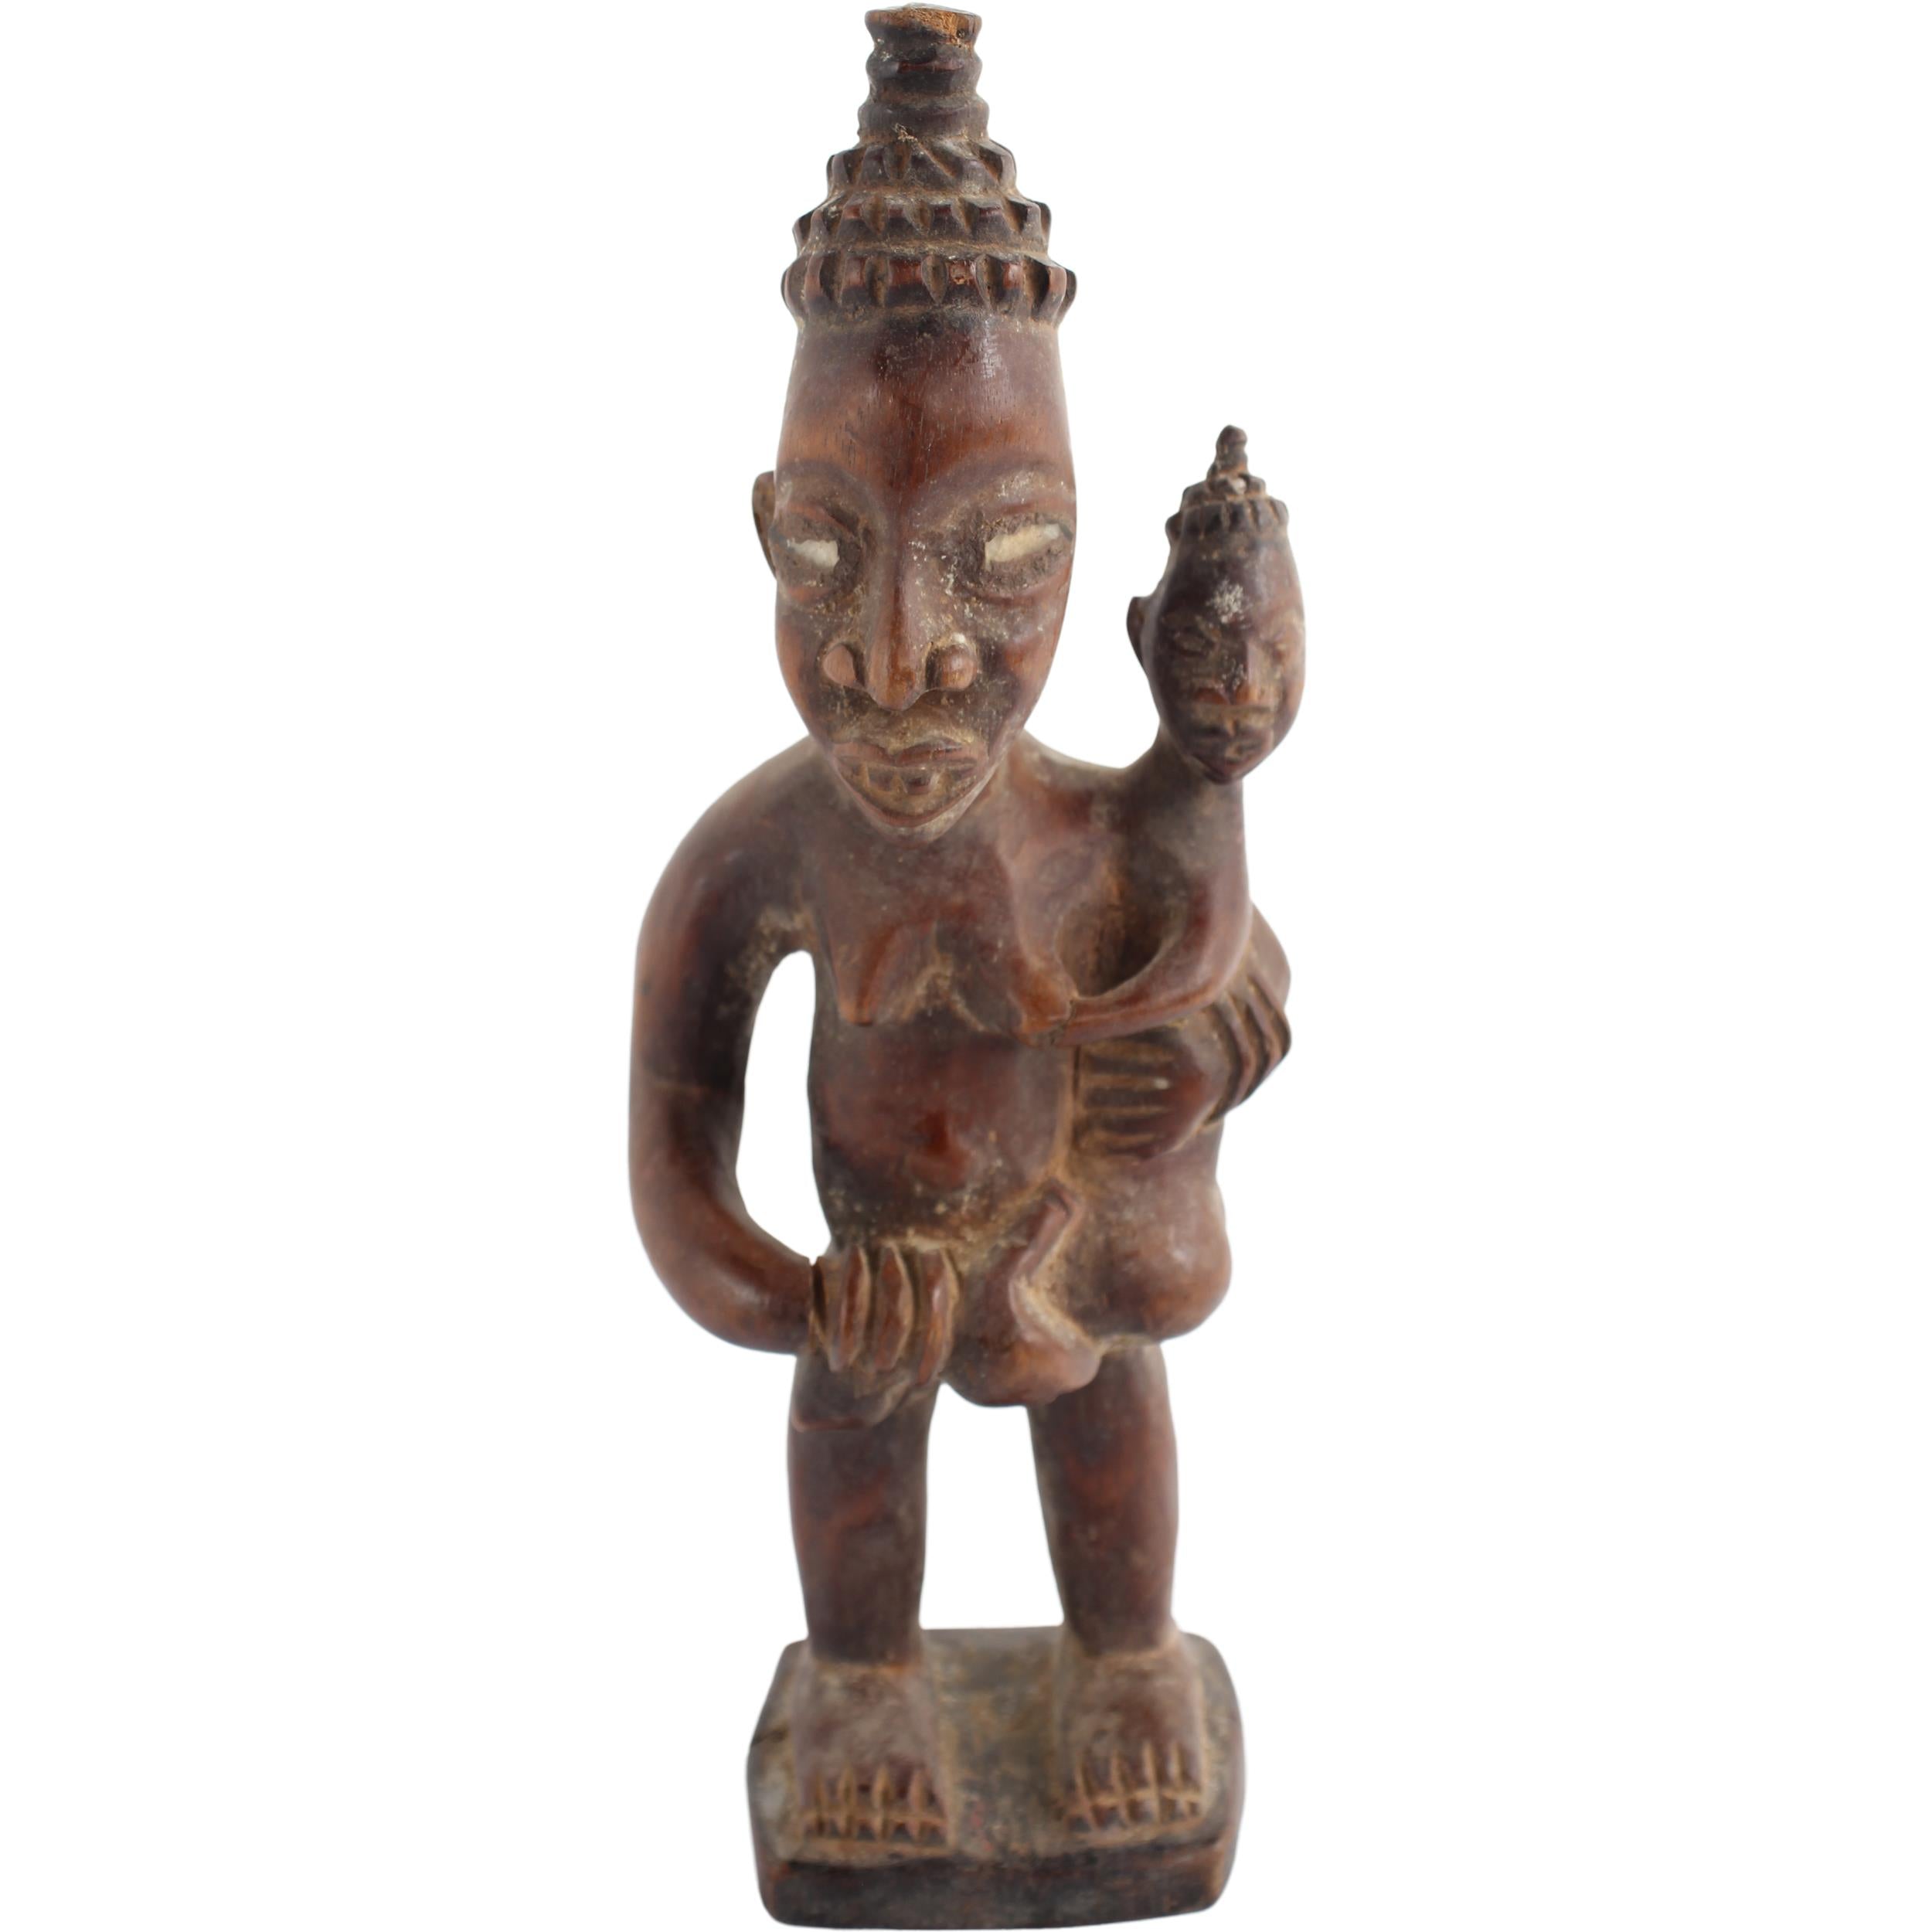 Yoruba Tribe Figurine ~11.0" Tall